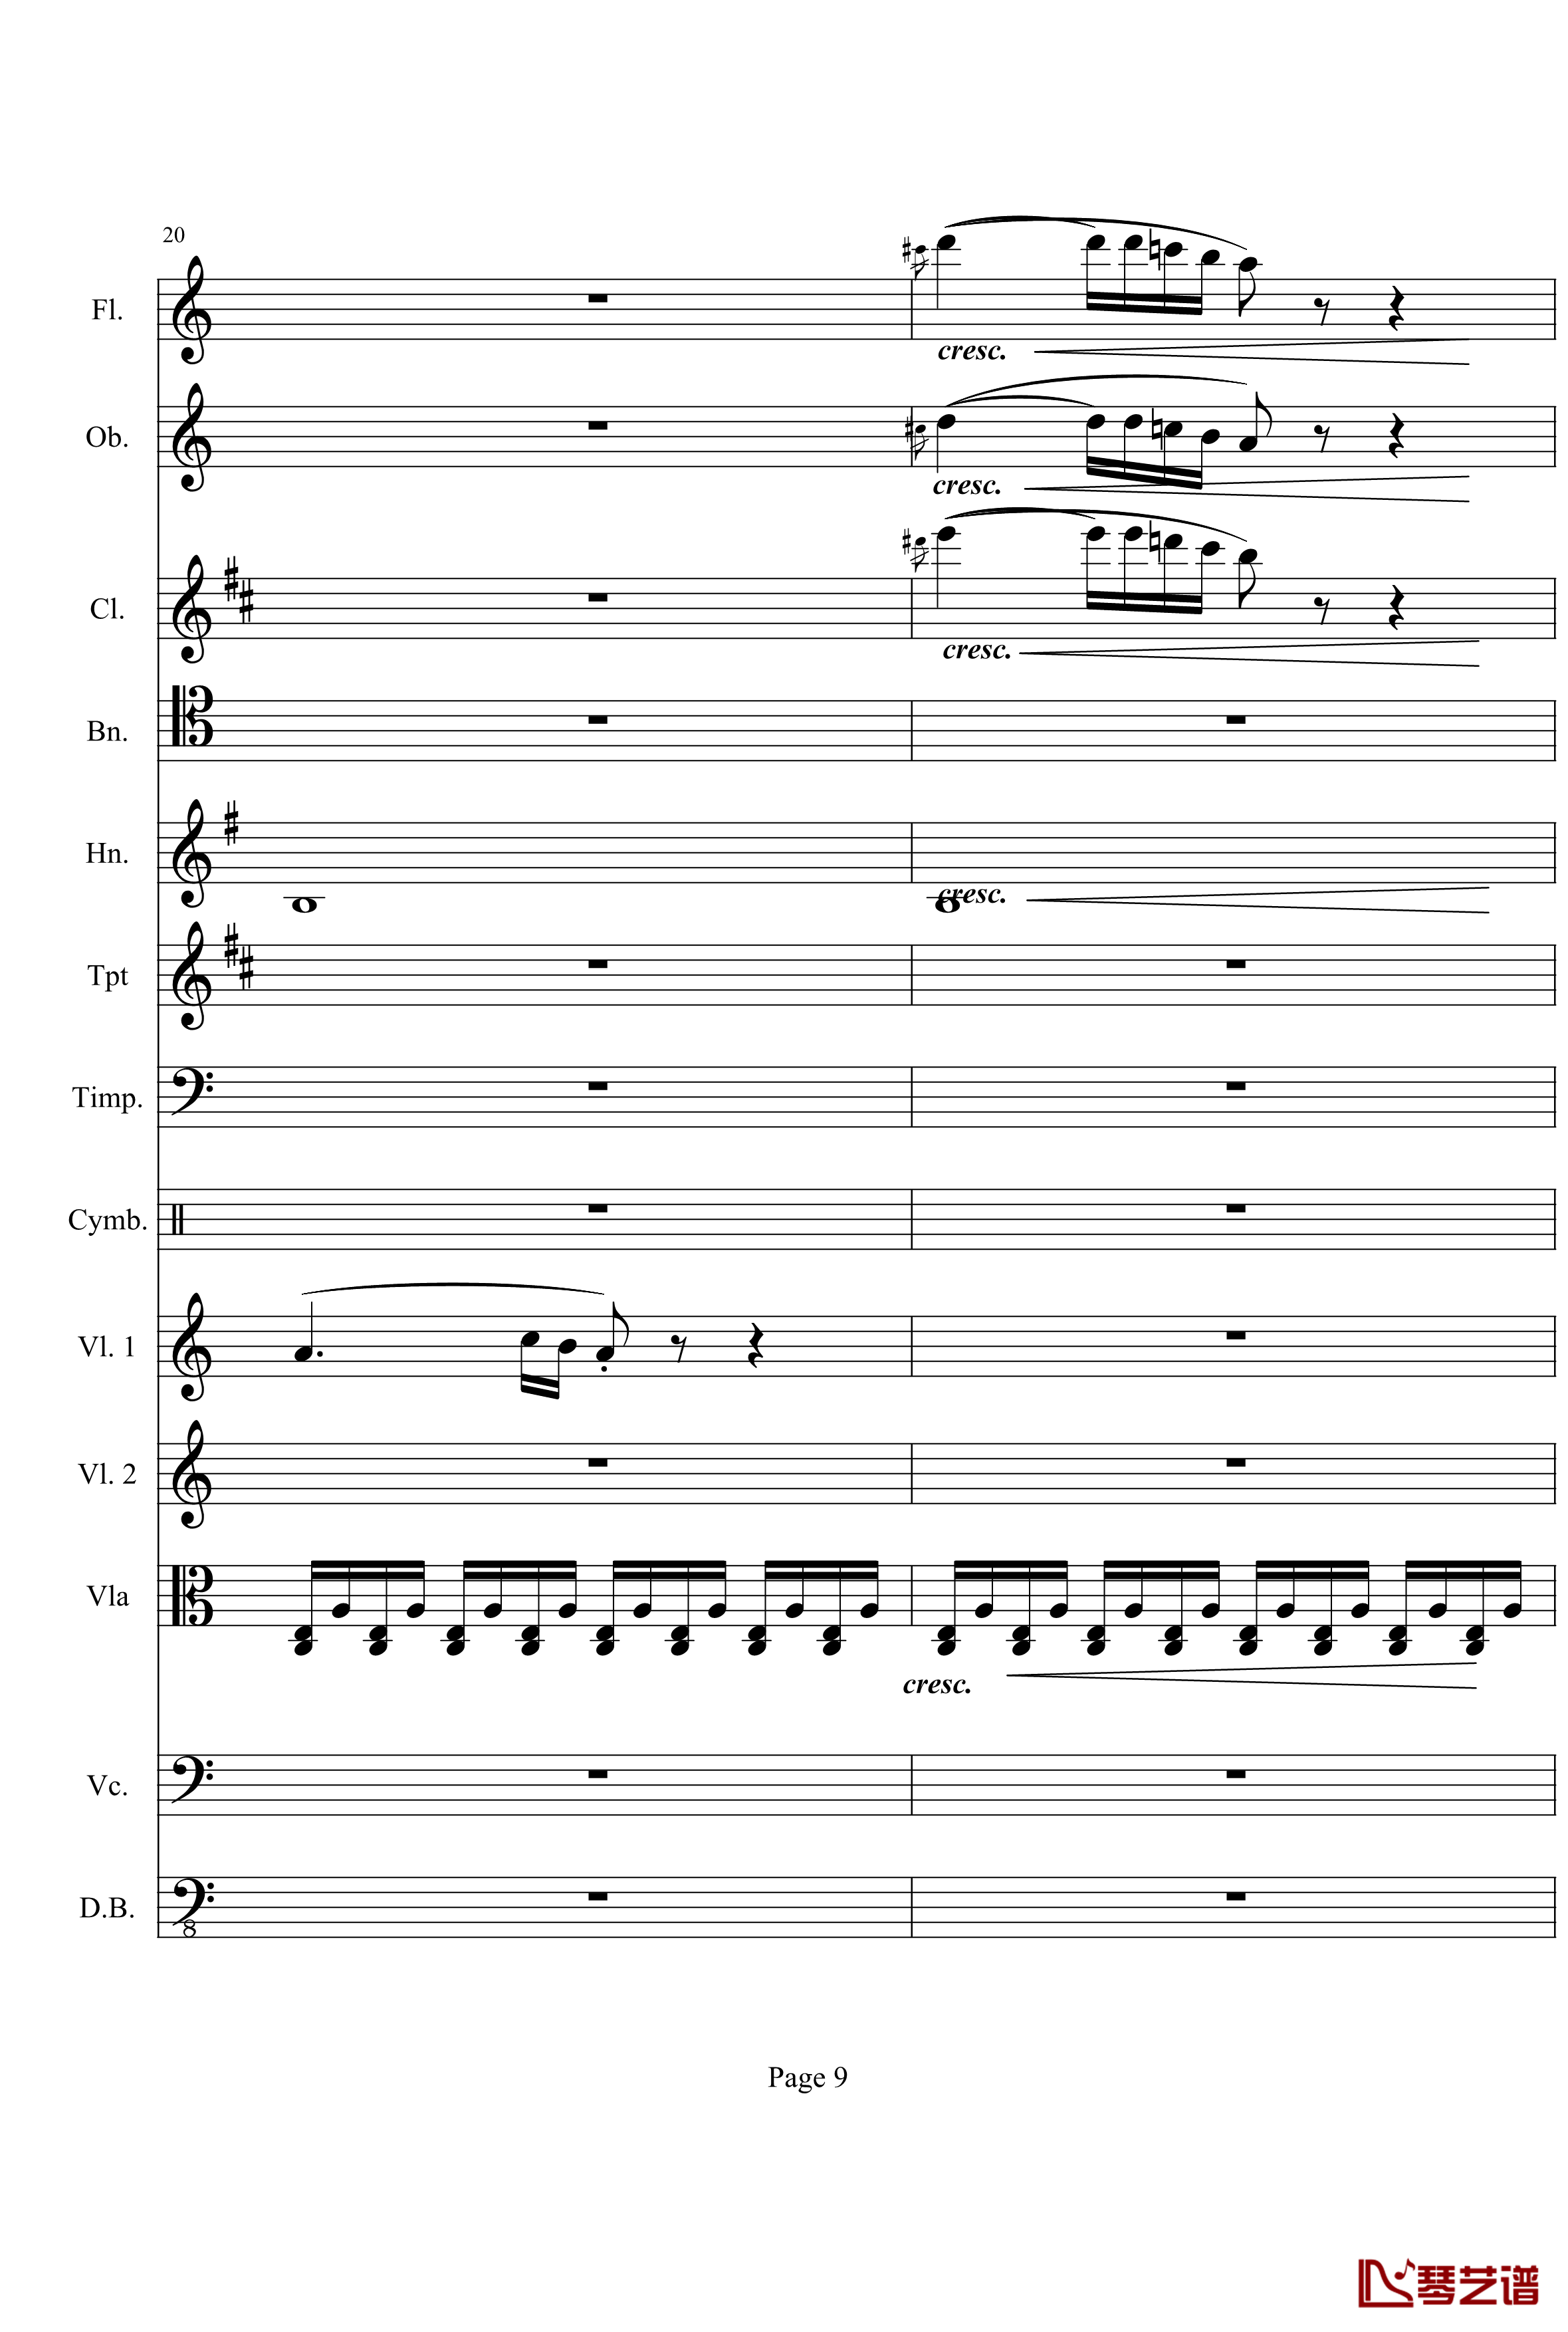 奏鸣曲之交响钢琴谱-第21-Ⅰ-贝多芬-beethoven9